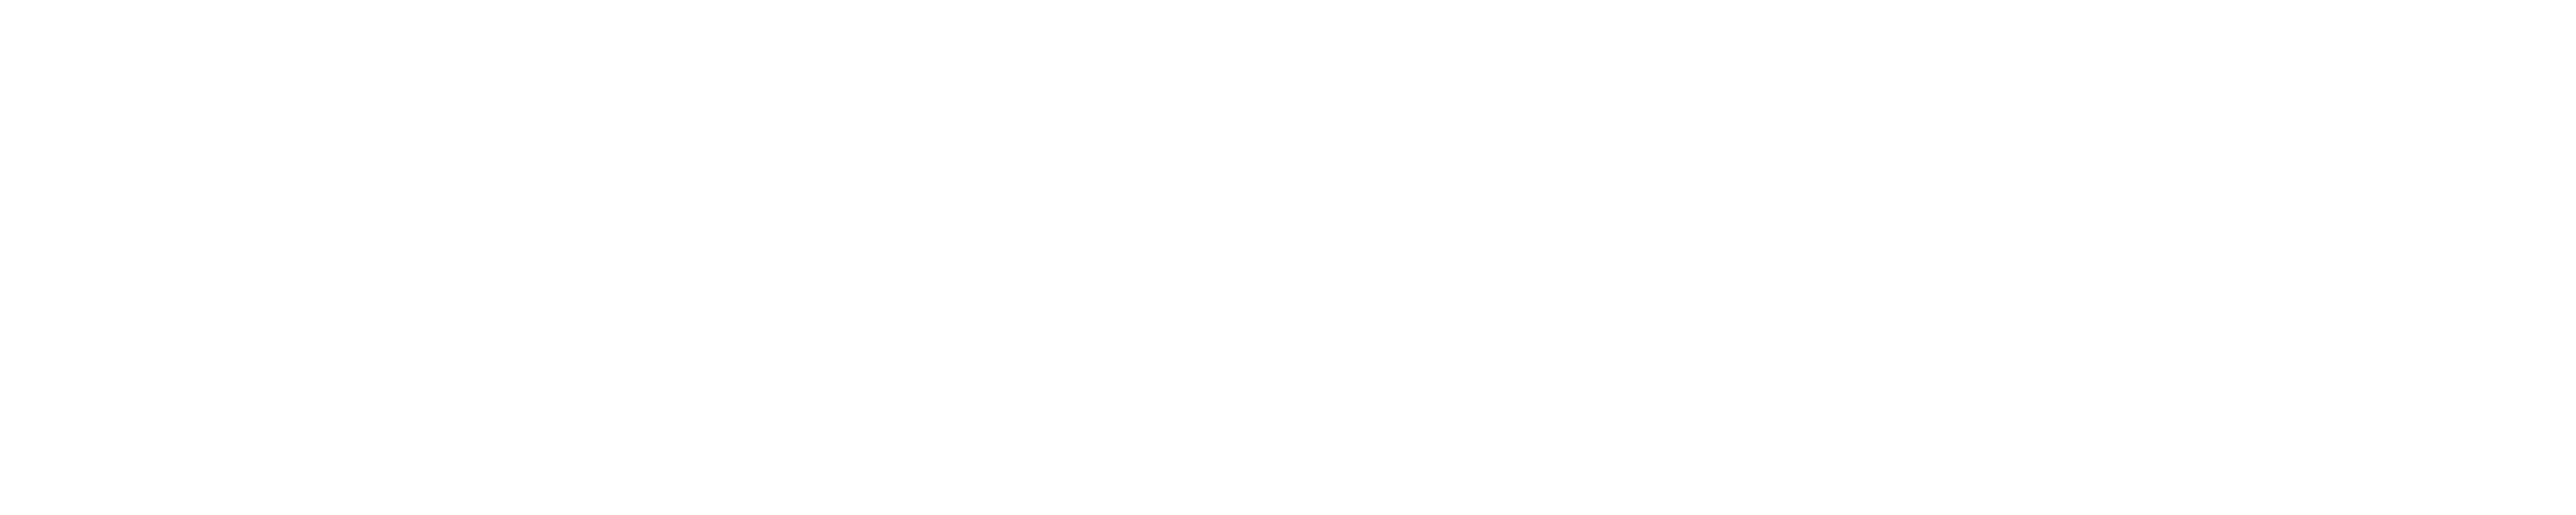 E-Sigara Shop